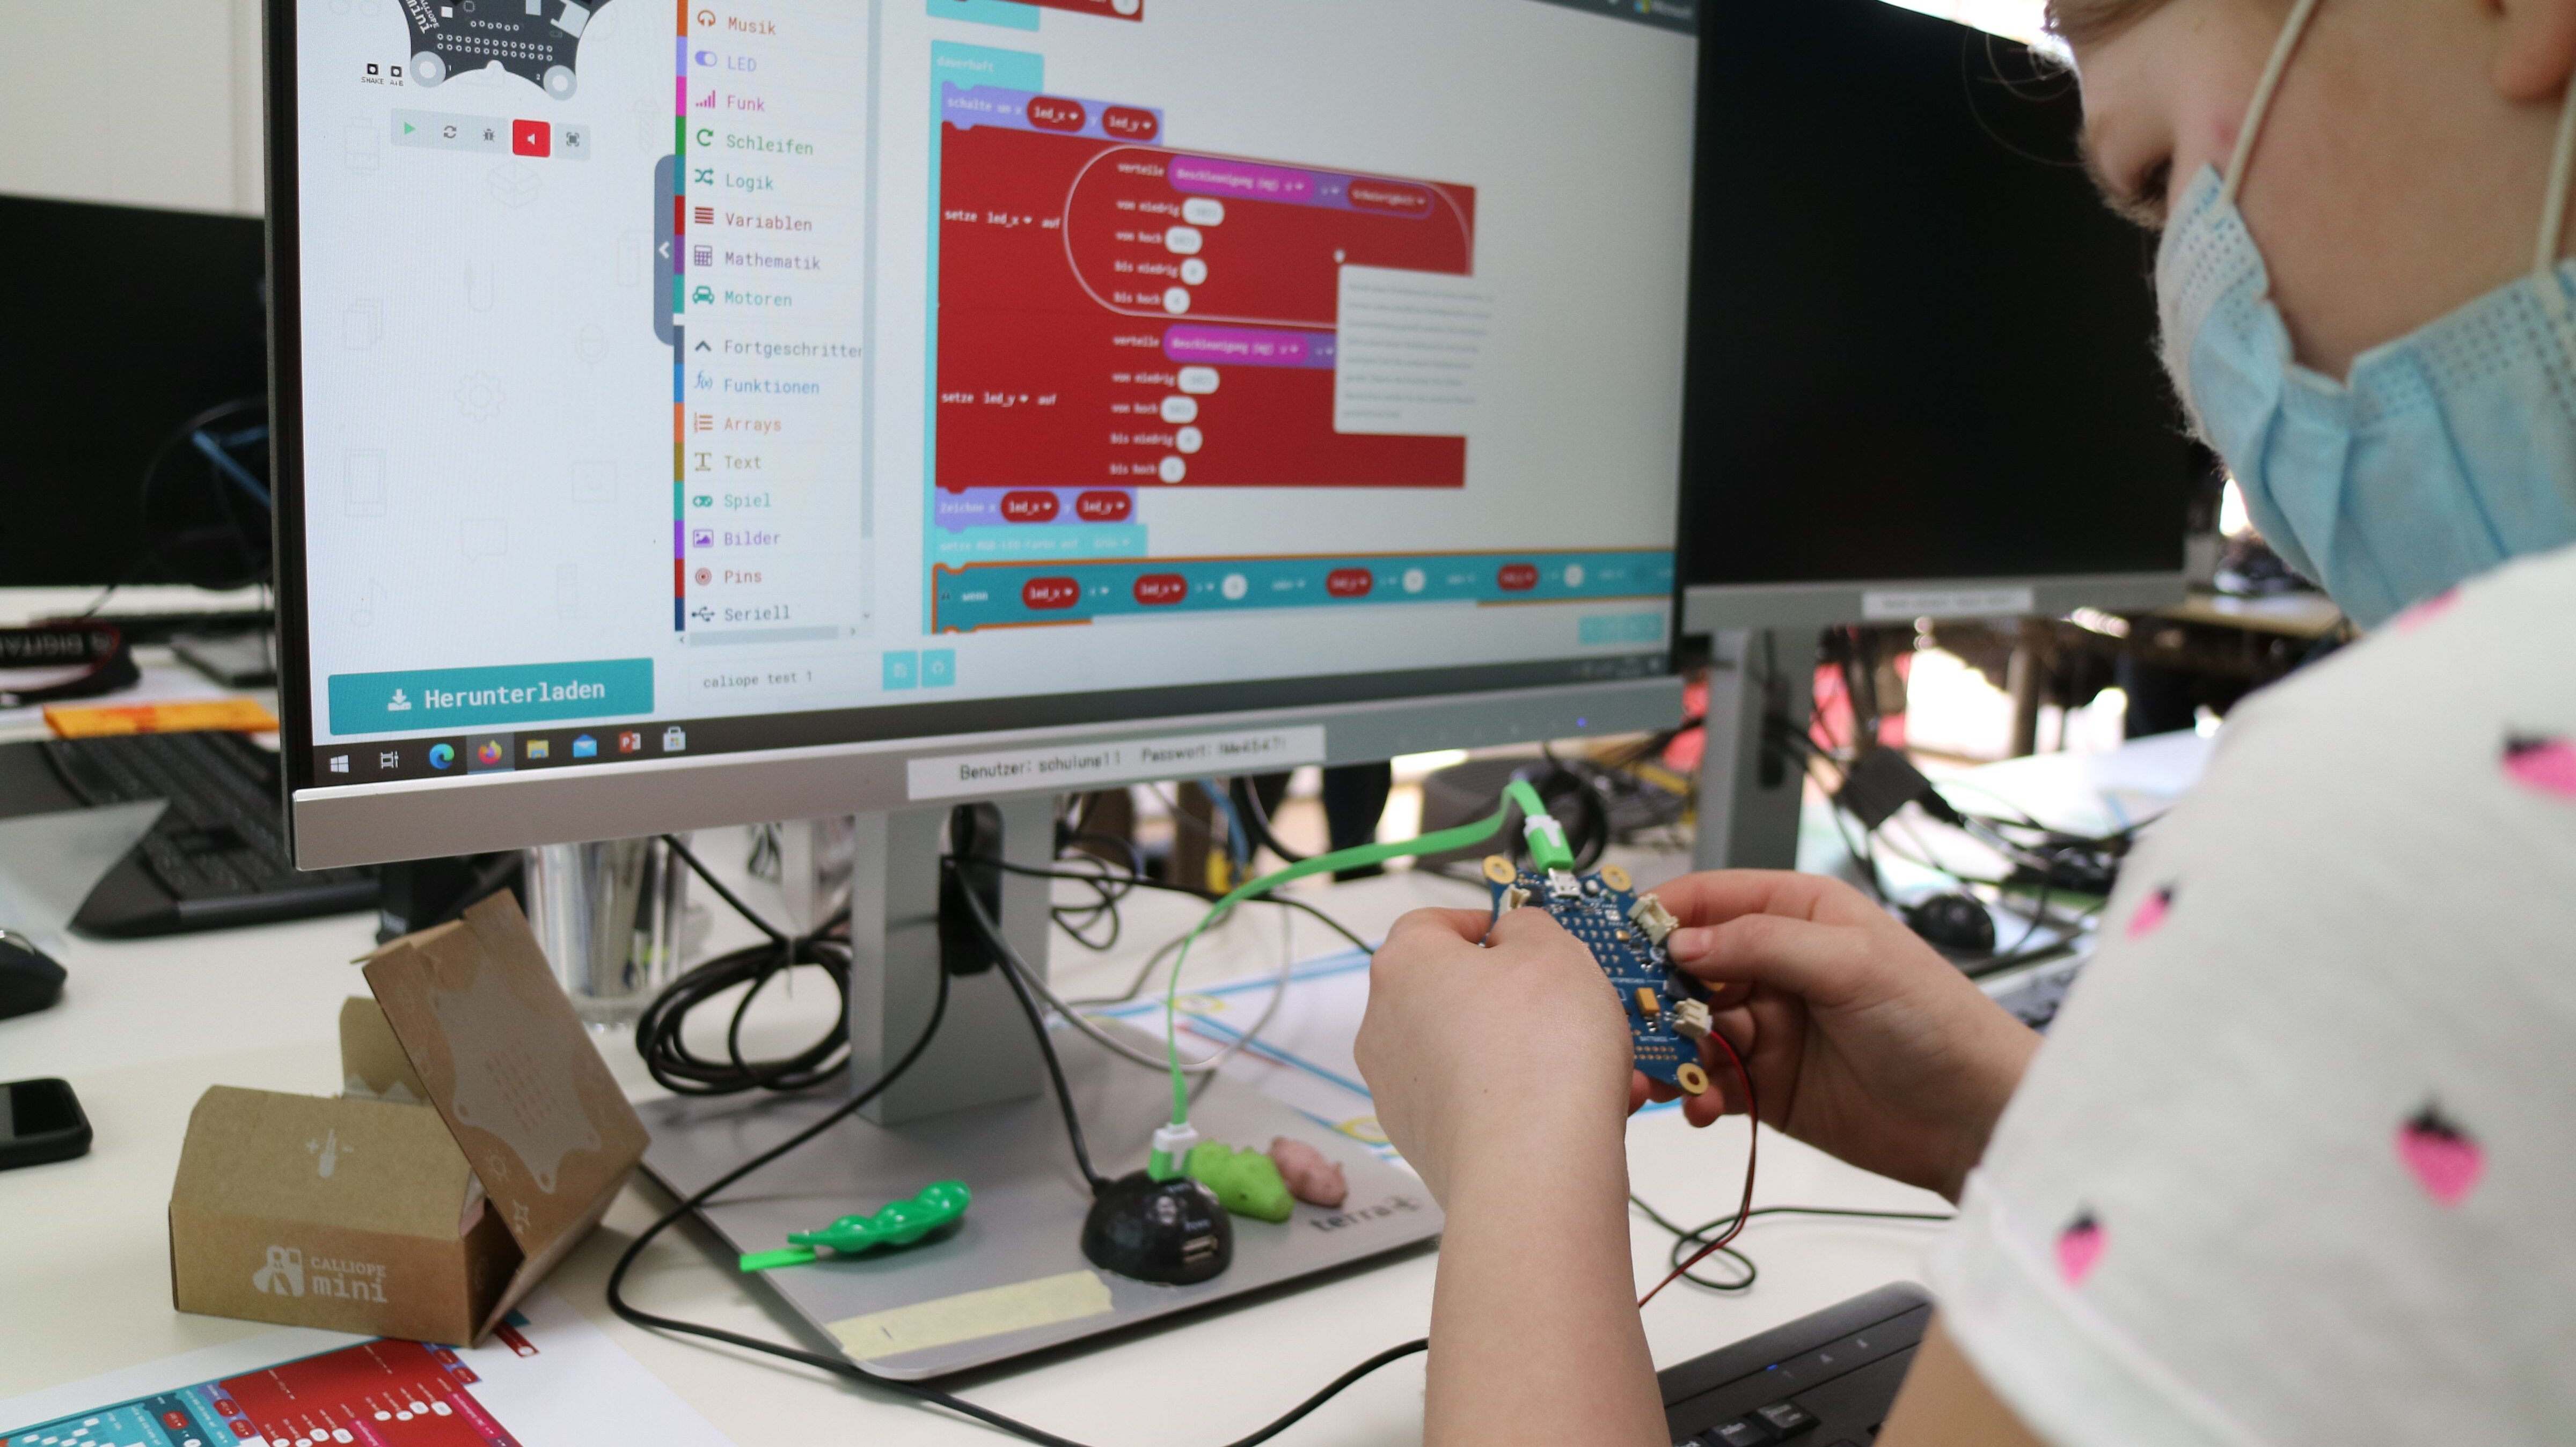 Mädchen arbeitet am Calliope vor einem Computer, auf dem man eine Programmierung sieht